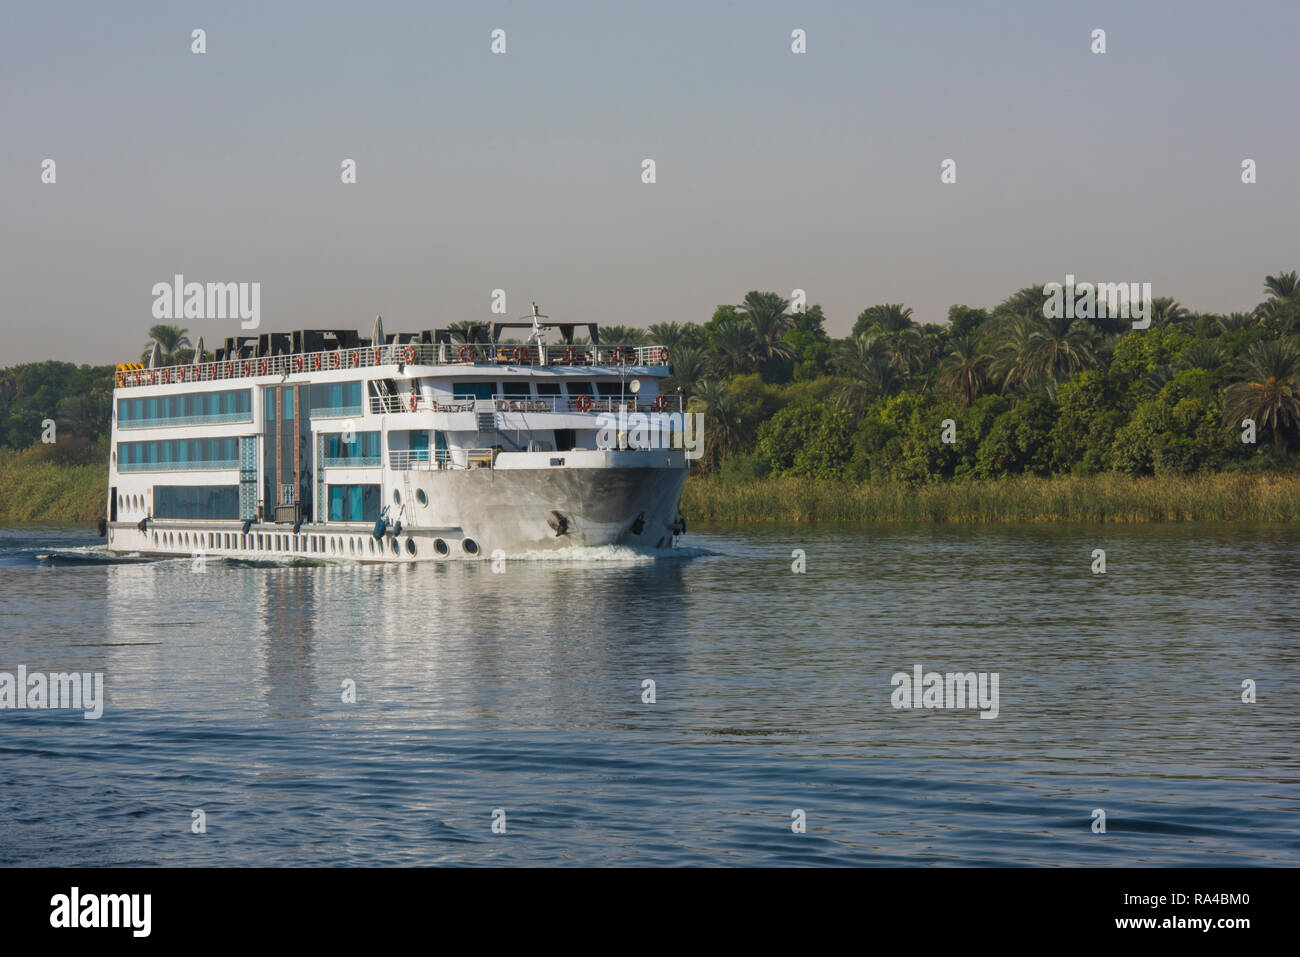 Grand luxe croisière égyptienne traditionnelle bateau naviguant sur le Nil avec réflexion Banque D'Images